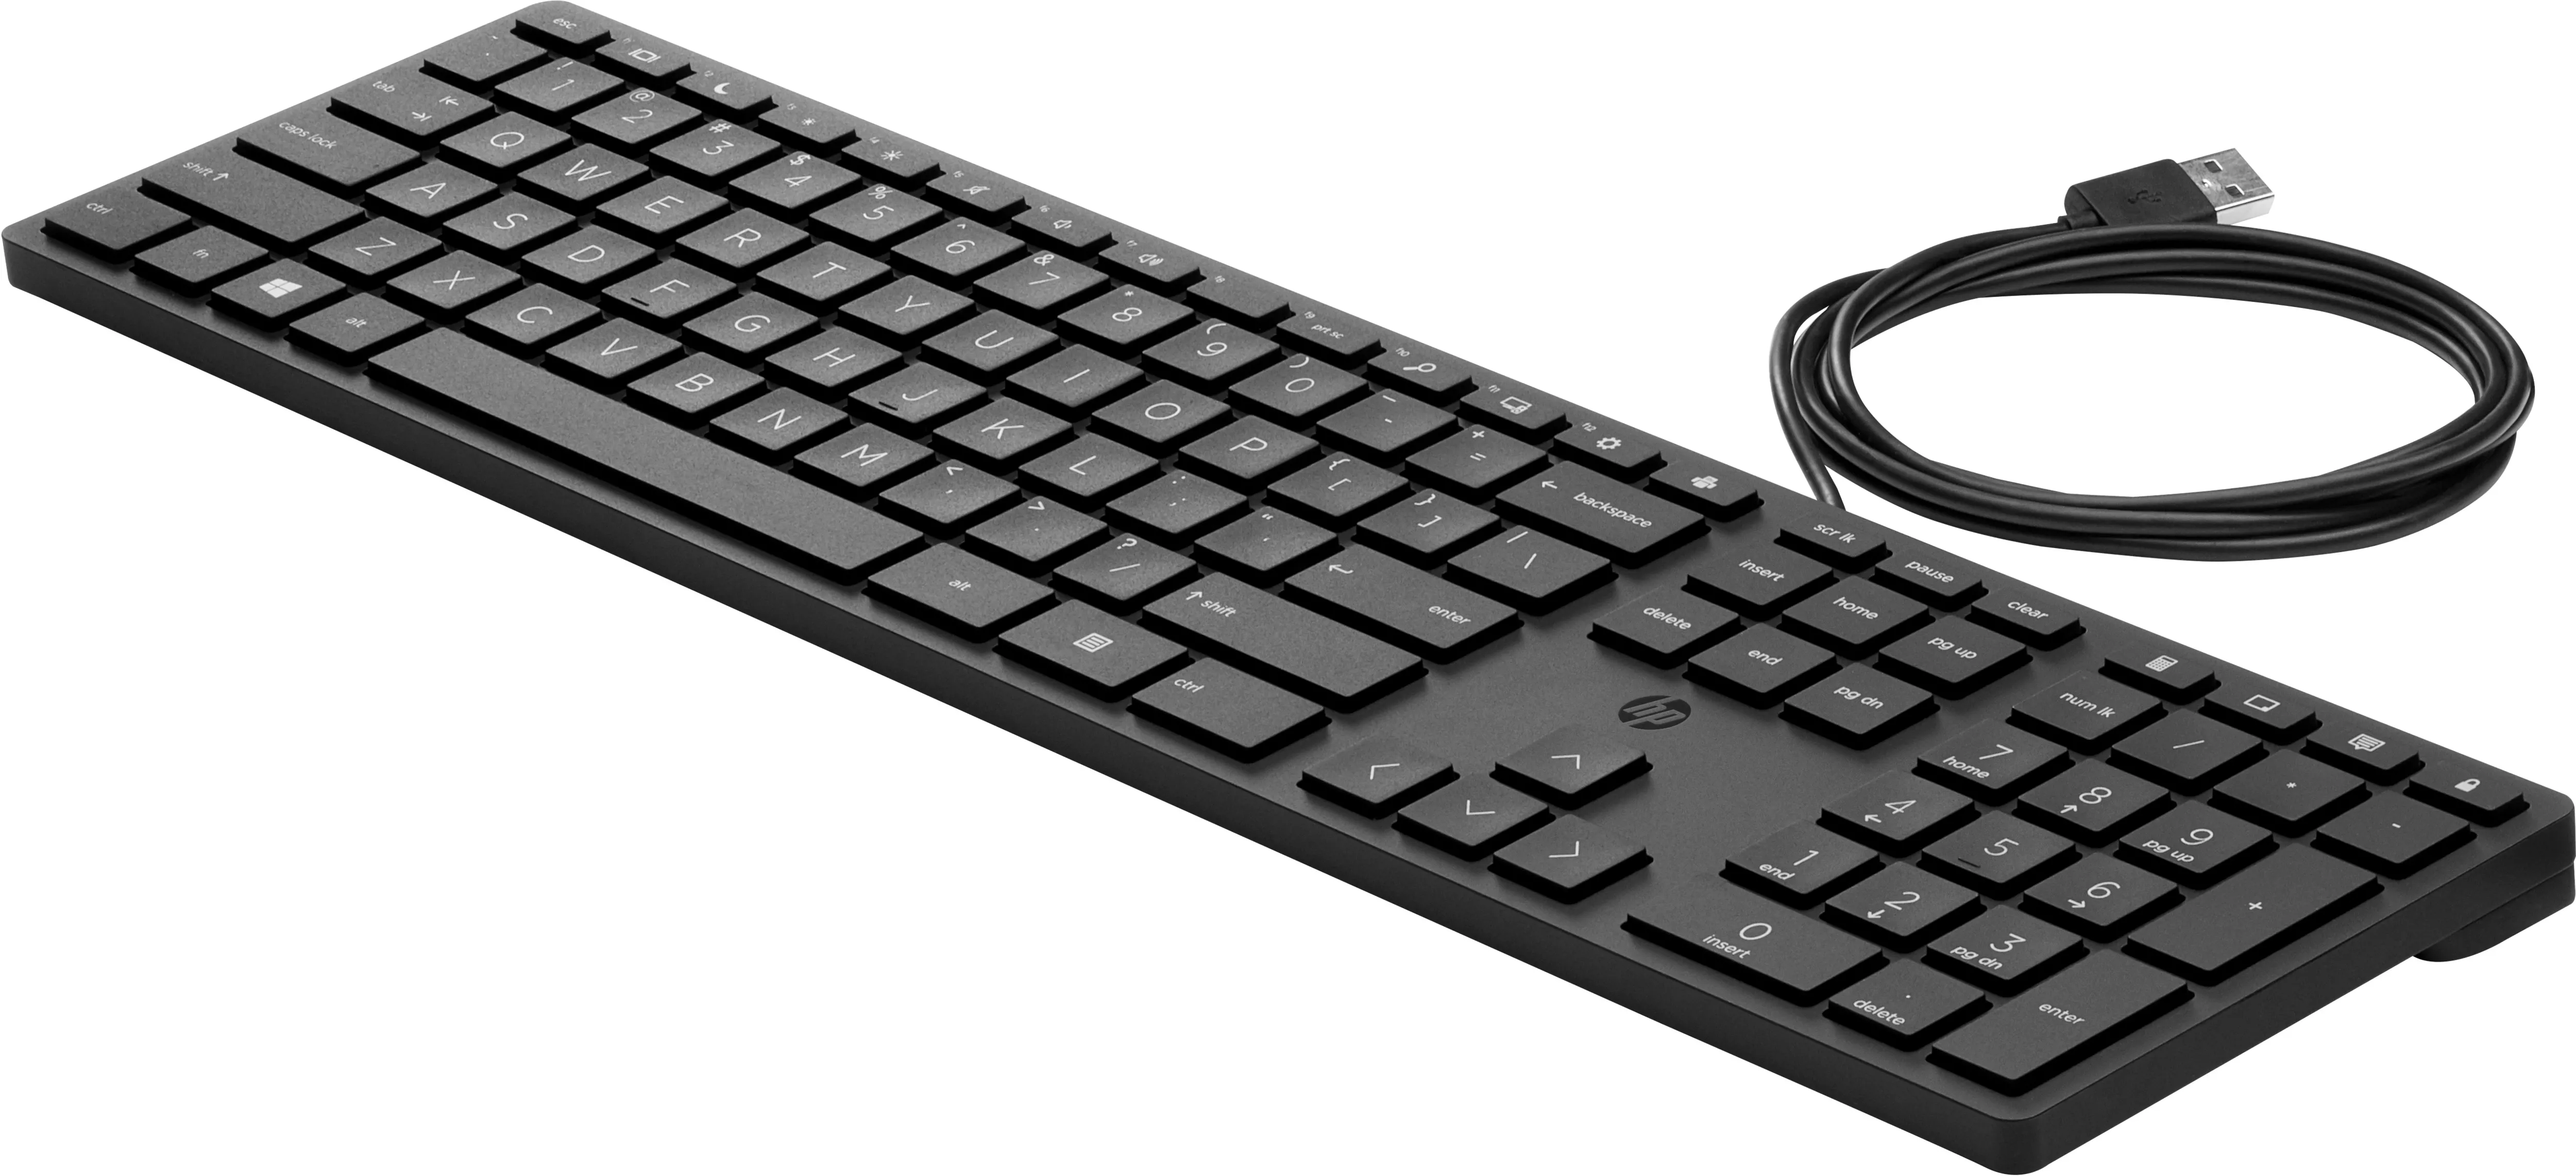 Revendeur officiel HP Wired Desktop 320K Keyboard (PT